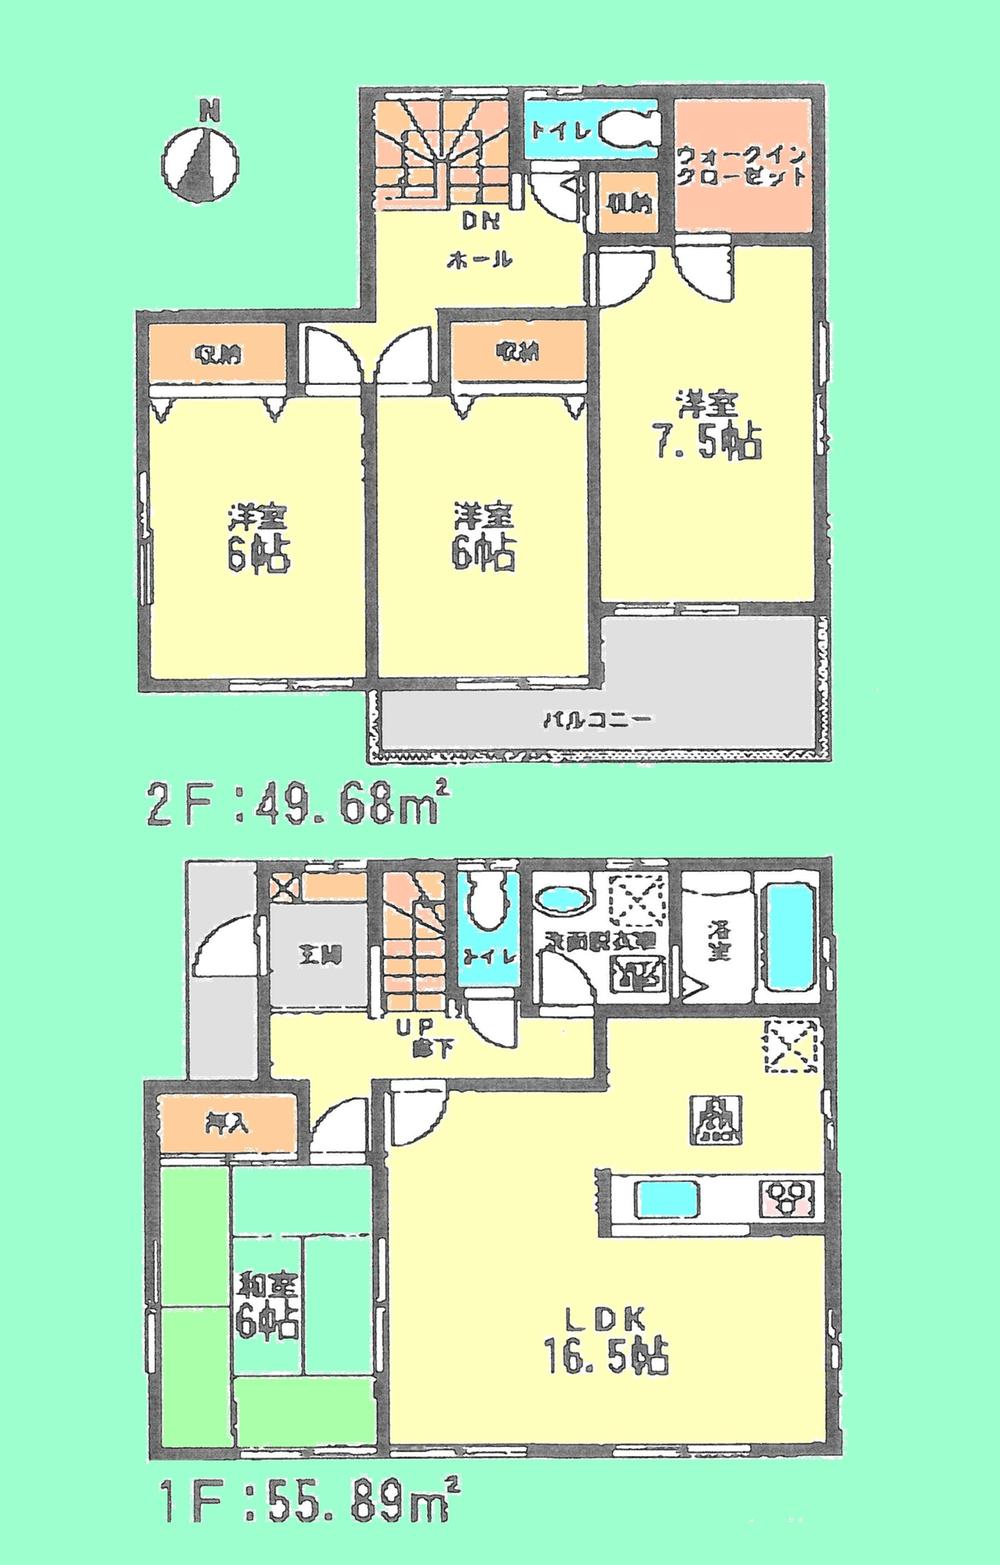 Floor plan. 23,980,000 yen, 4LDK, Land area 140.3 sq m , Building area 107.72 sq m floor plan